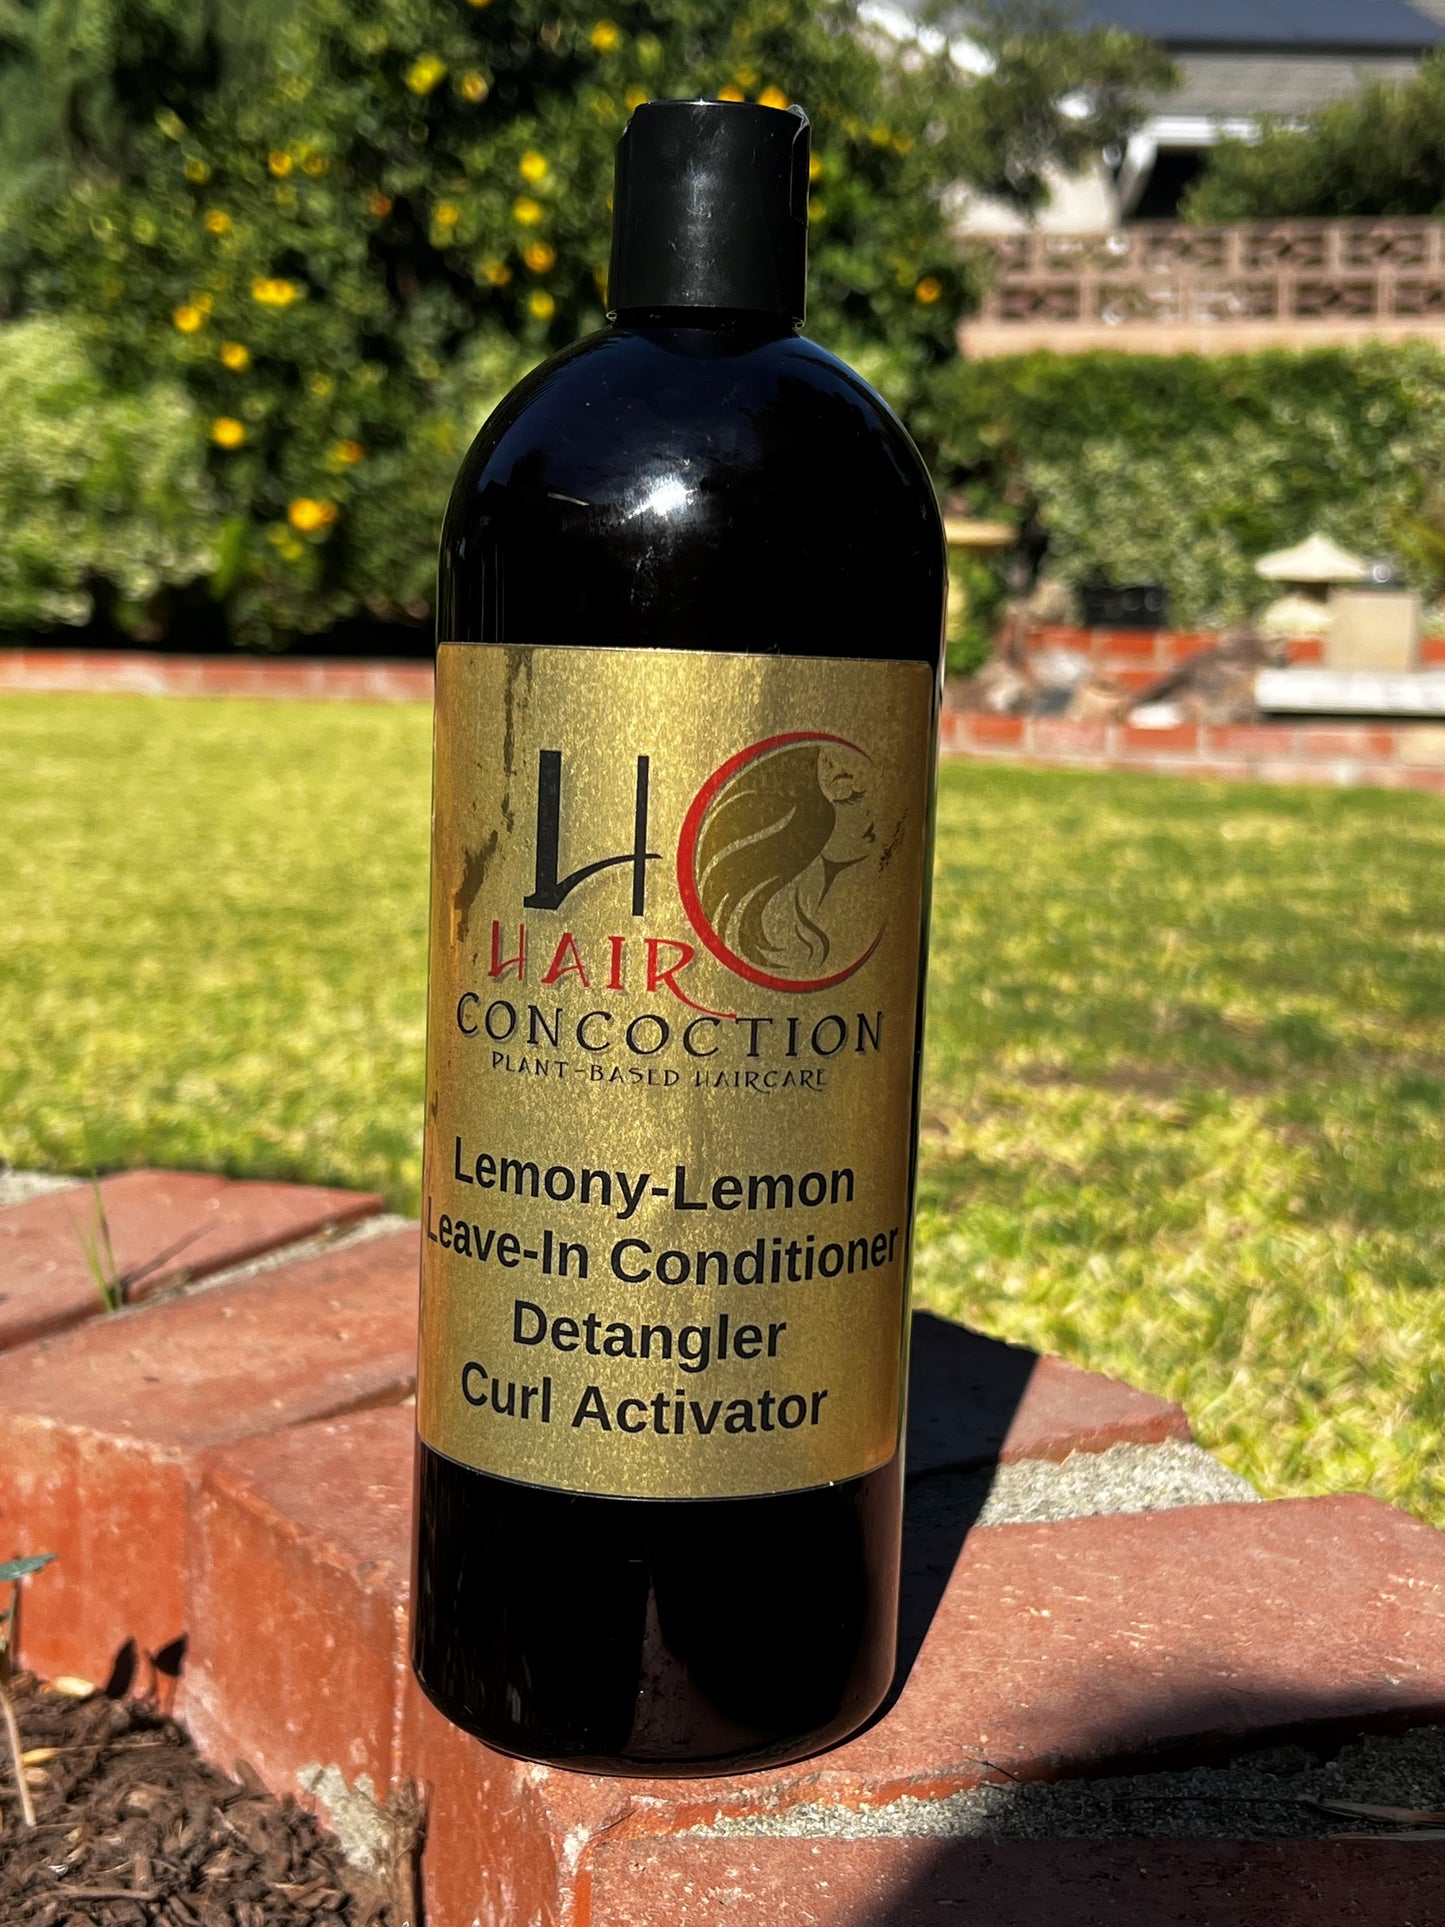 Lemony-Lemongrass Leave-In Conditioner Detangler Curl Activator